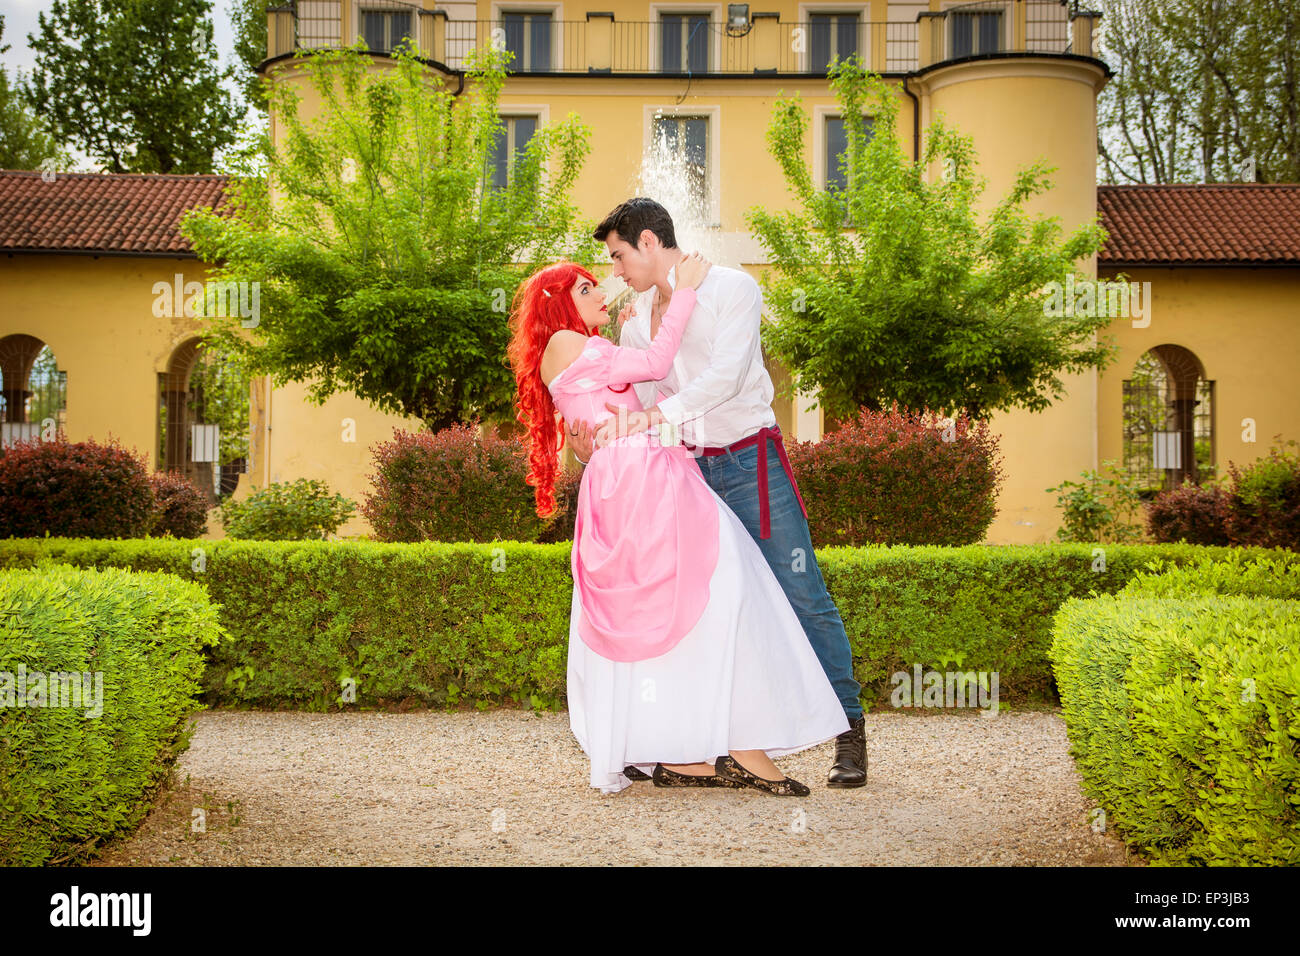 Romantische Märchen Paare tanzen im schönen Schlossgarten in ruhigen idyllischen, Einstellung, Prinz und Prinzessin Blick auf jede Ot Stockfoto